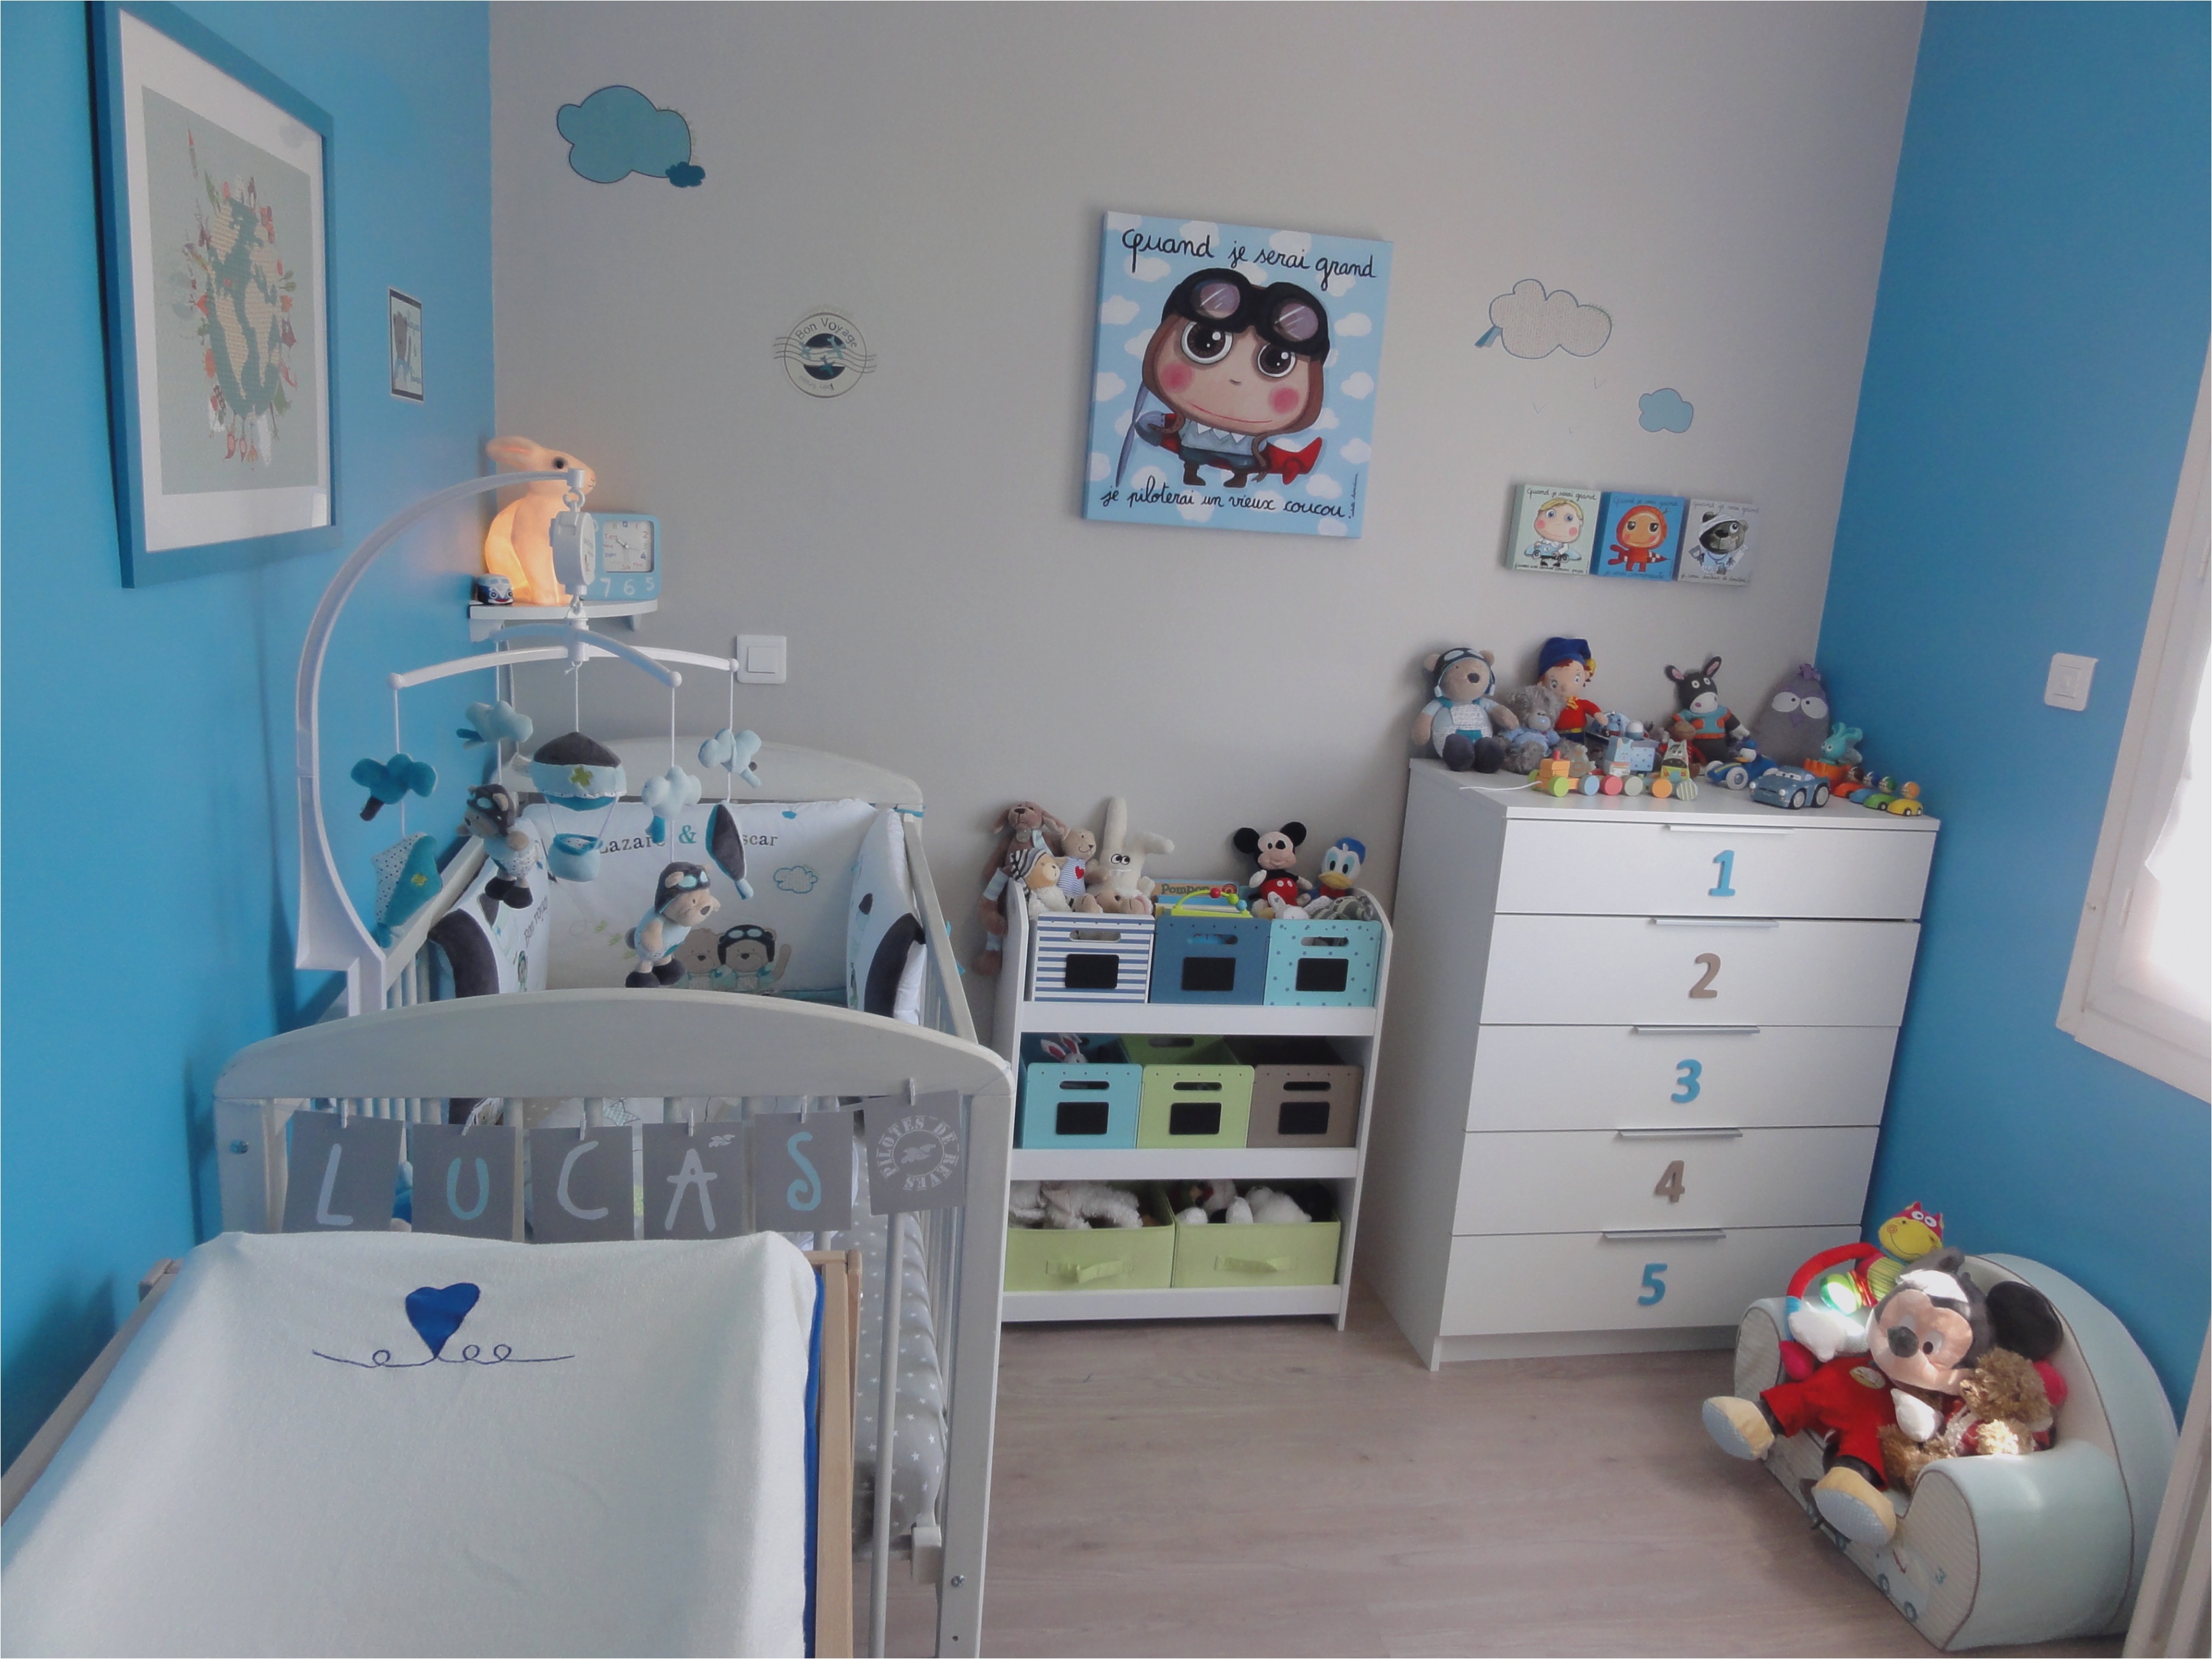 Décoration chambre bébé : quel est l’impact sur le développement du bébé ?